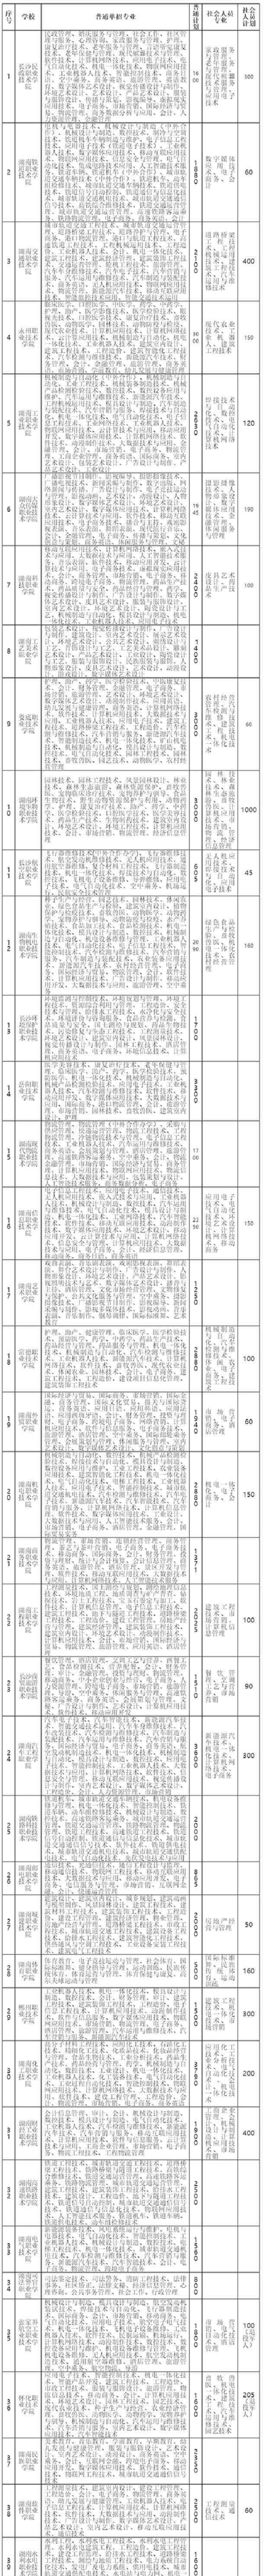 长沙铁道兵学院 2020湖南高职单招院校名单71所【完整】